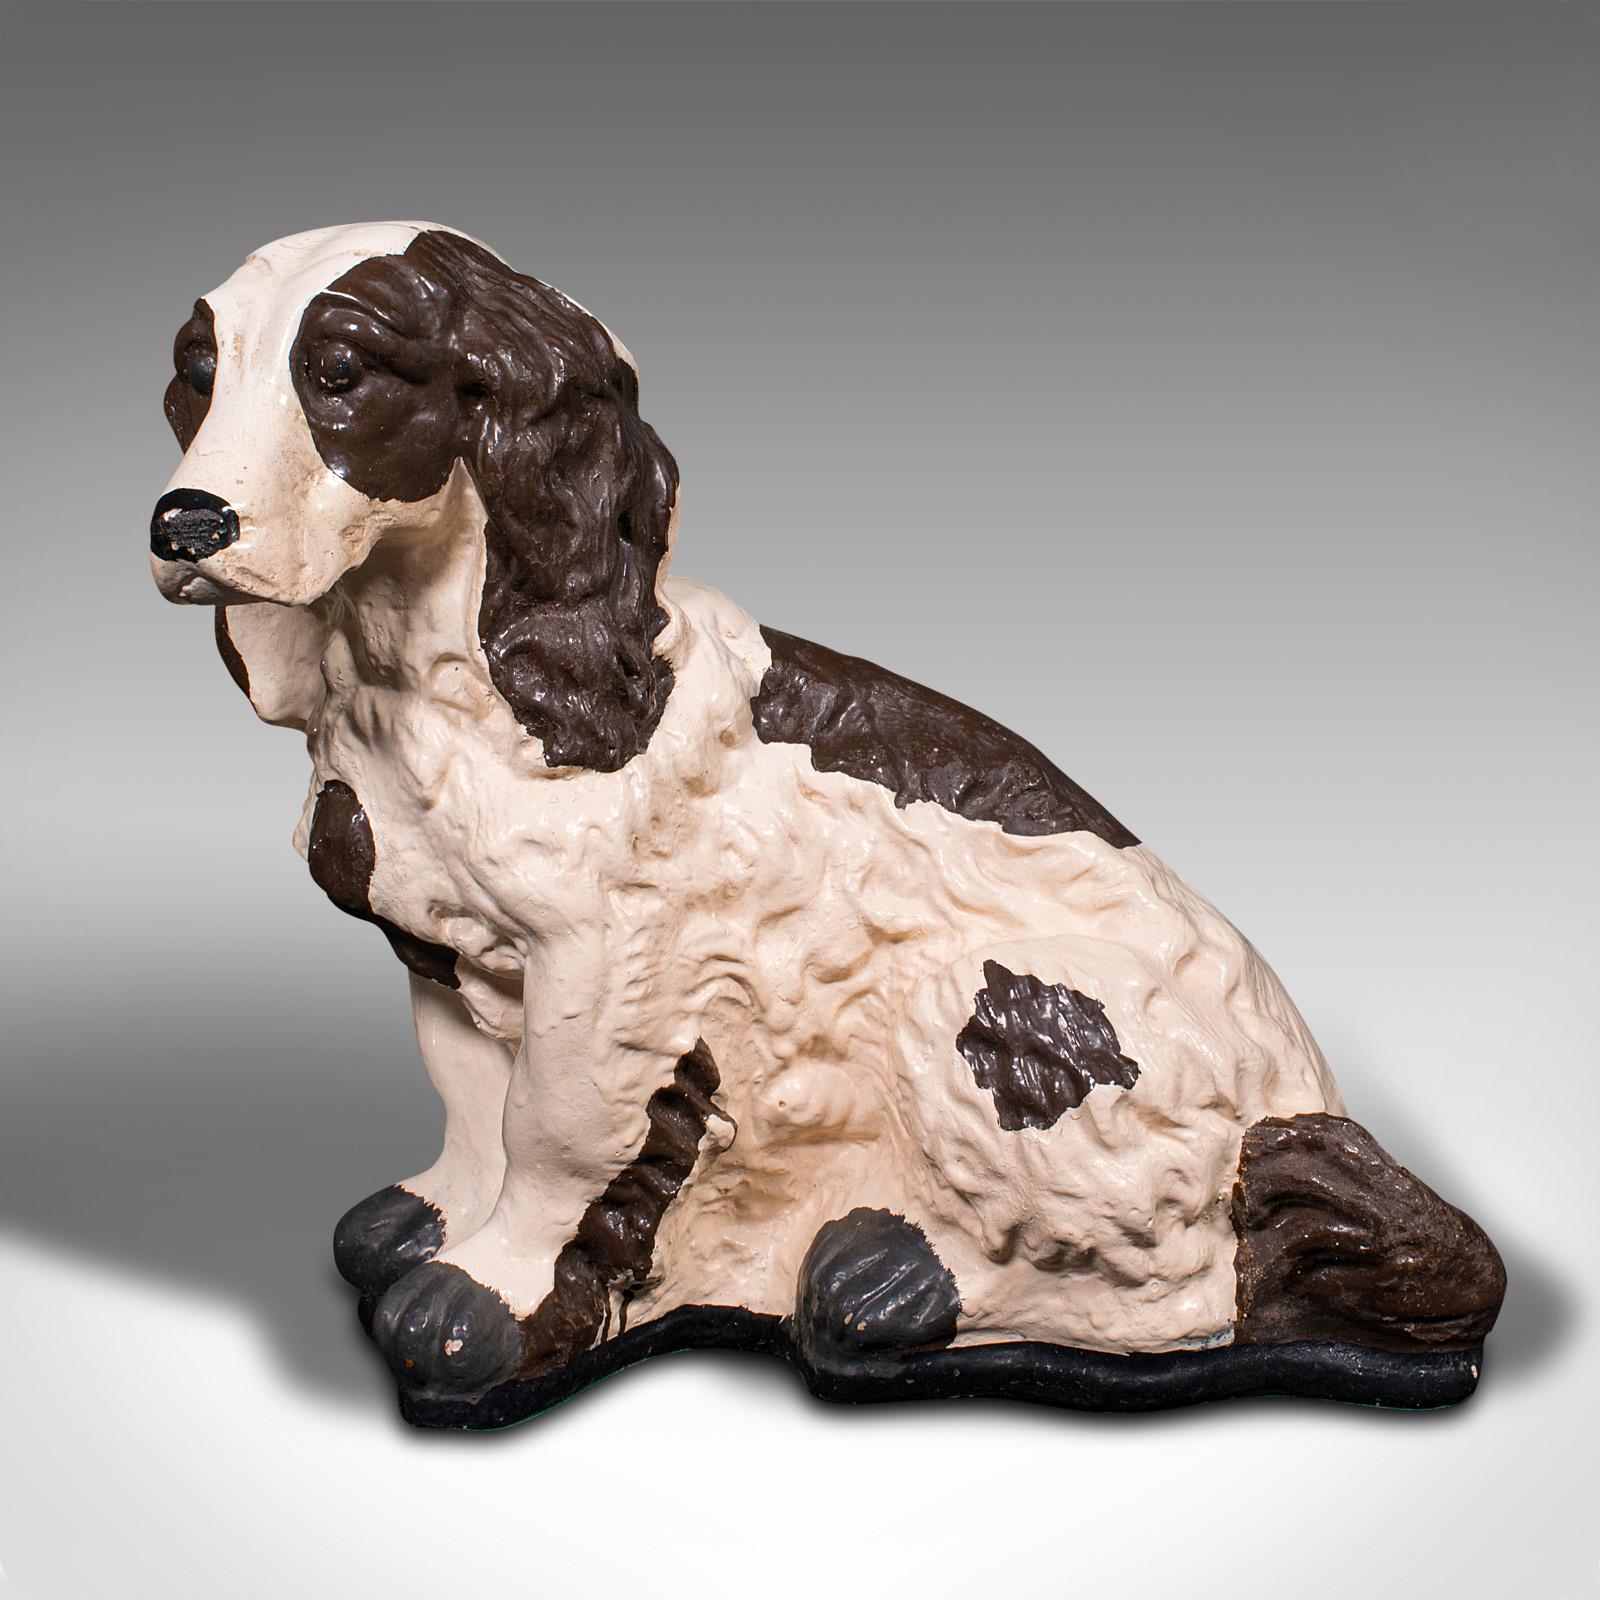 Dies ist eine antike Cockerspaniel-Statue. Eine englische Hundefigur aus Gips, aus der späten viktorianischen Zeit, um 1900.

Schönes dekoratives Exemplar der beliebten Rasse
Zeigt eine wünschenswerte gealterte Patina und in gutem